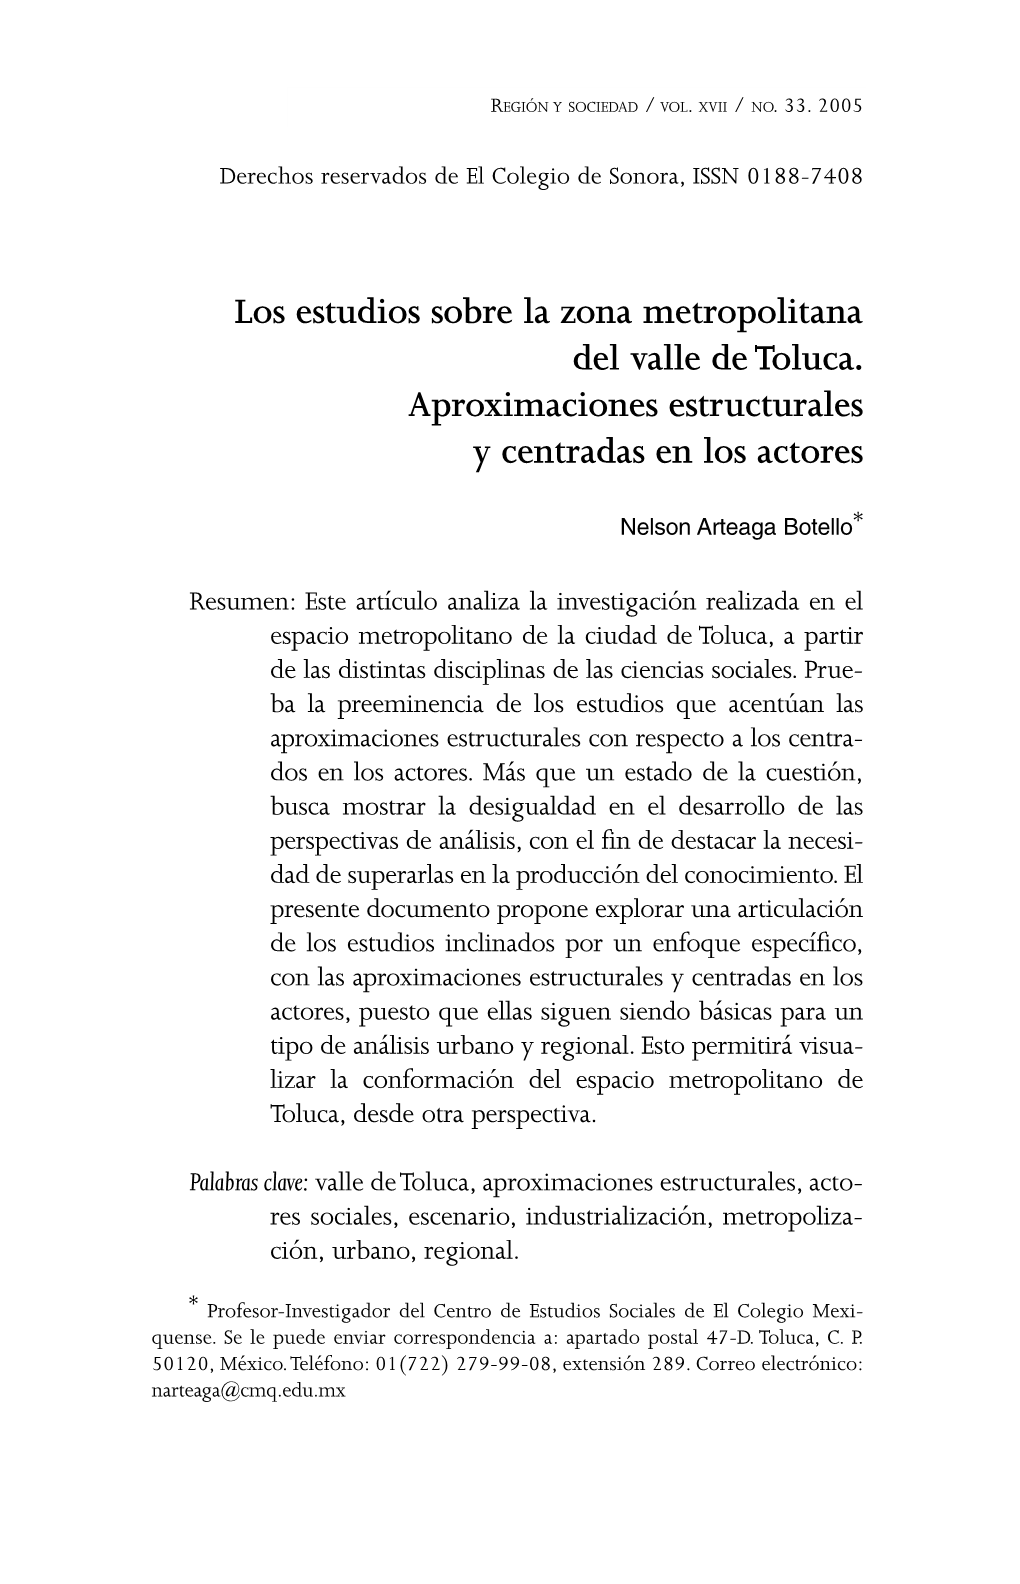 Los Estudios Sobre La Zona Metropolitana Del Valle De Toluca. Aproximaciones Estructurales Y Centradas En Los Actores